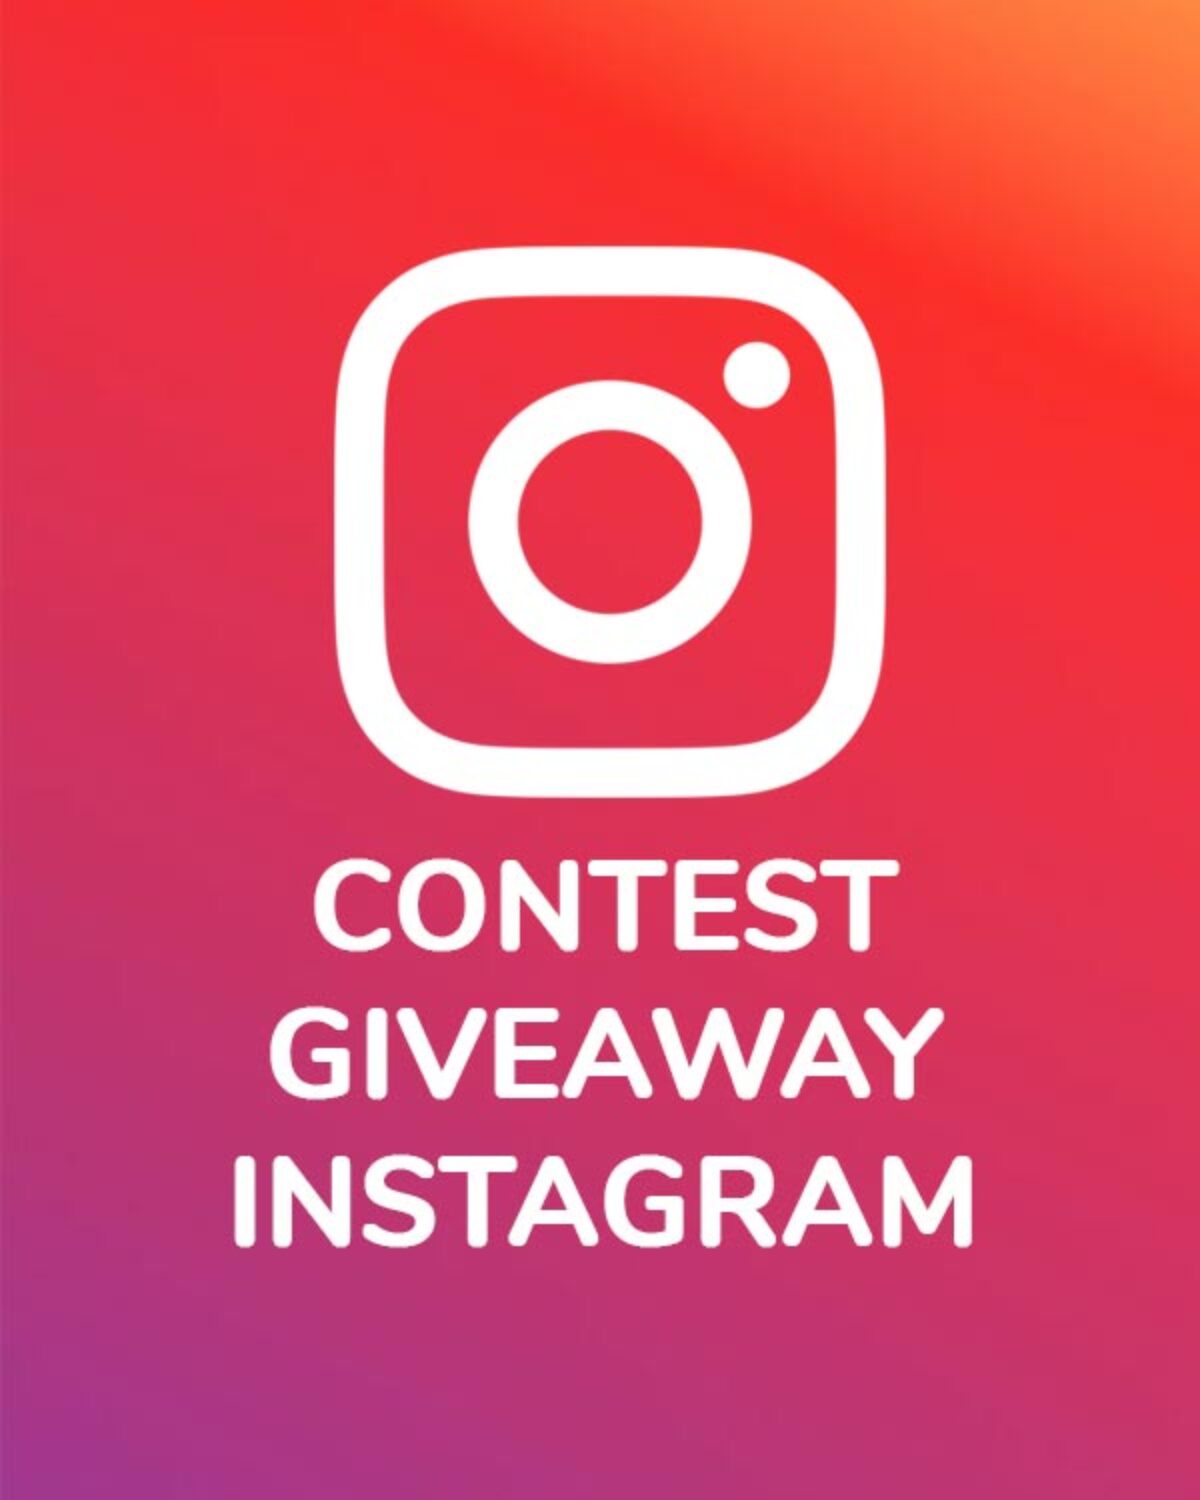 Contest Instagram 2020: ecco l'app per gestire giveaway legali